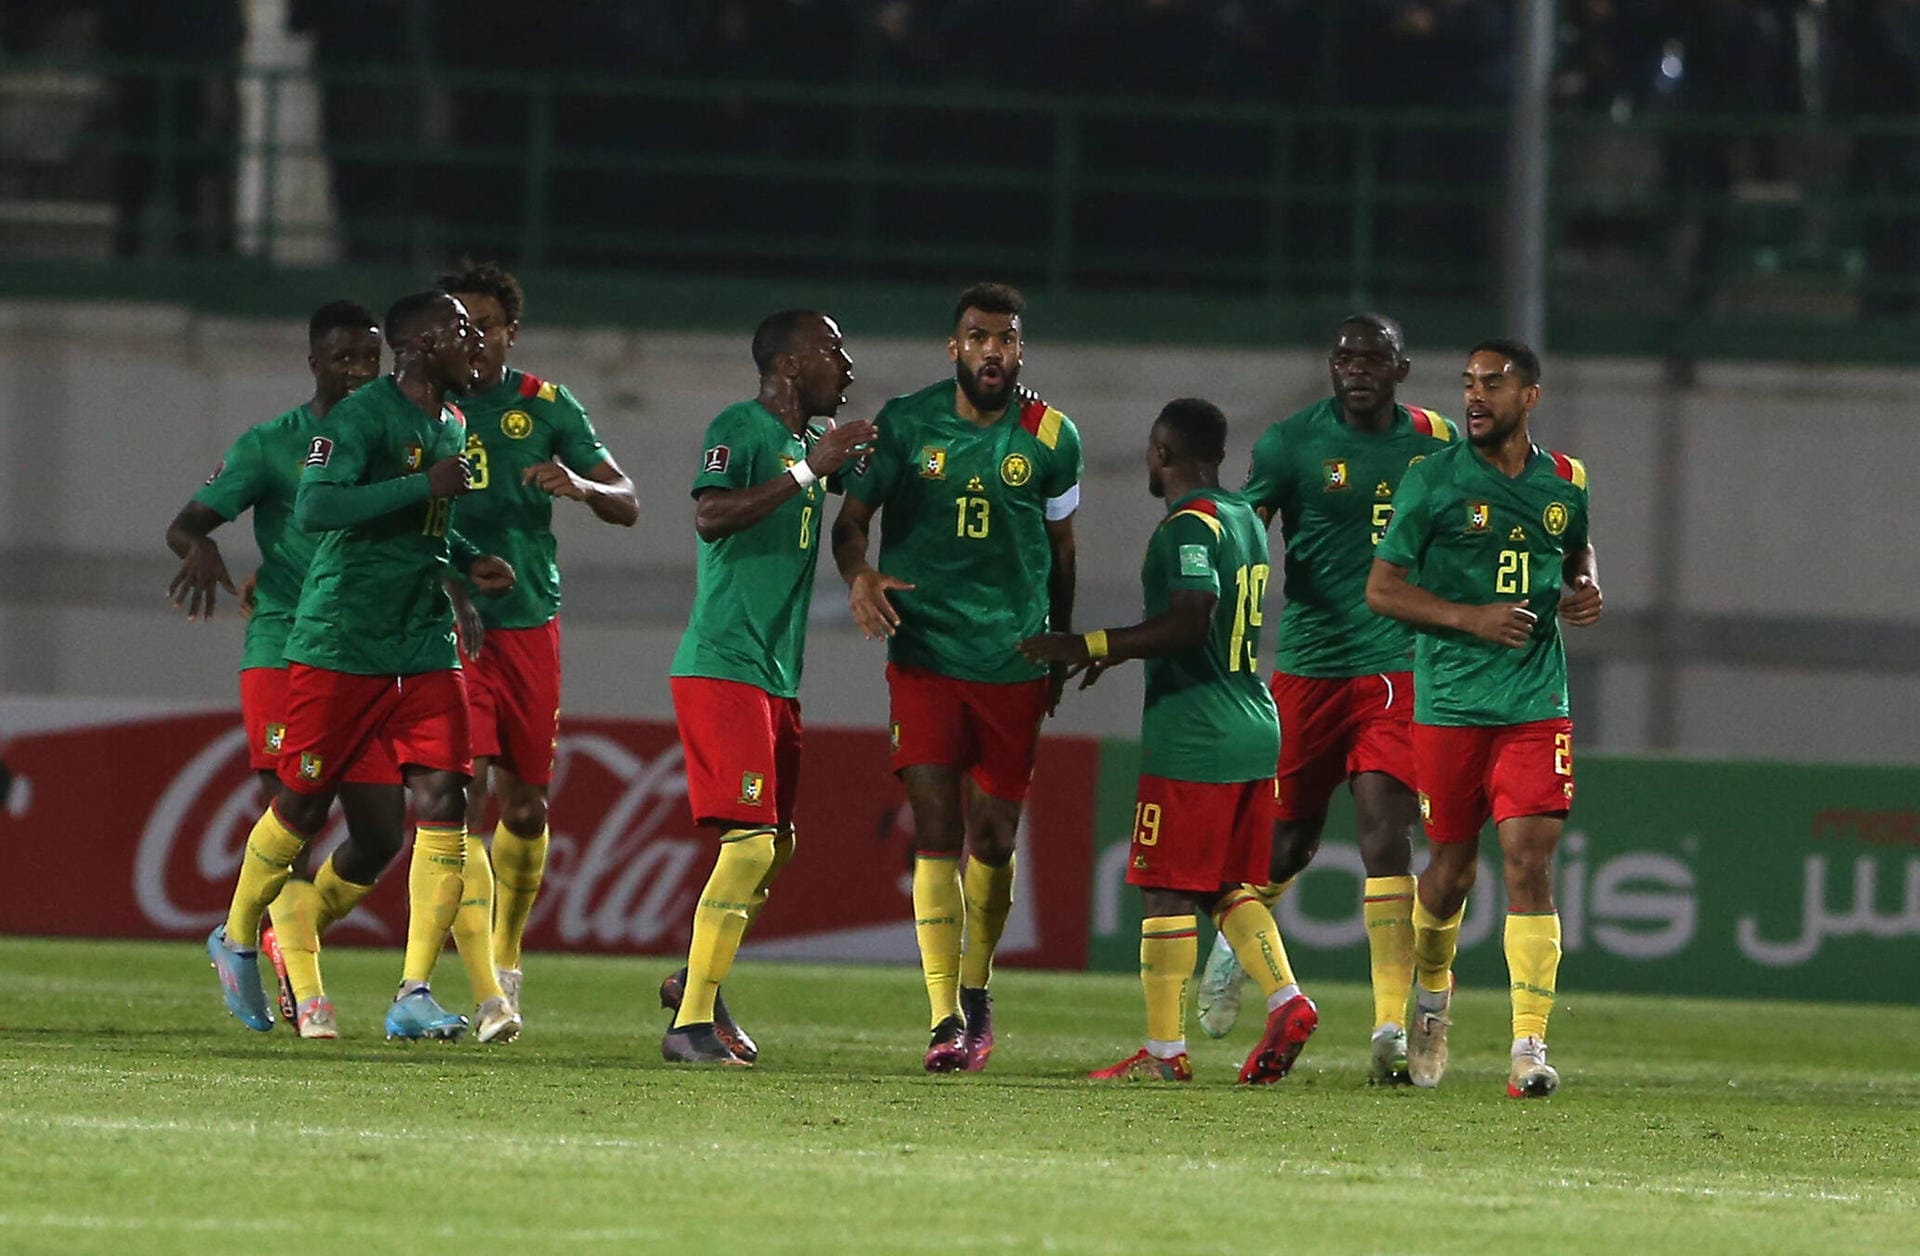 Kamerun: Die "Unzähmbaren Löwen" mit Kapitän und Bayern-Profi Eric Maxim Choupo-Moting behielt im dramatischen Playoff-Finale gegen Algerien die Oberhand (0:1, 2:1 n.V.). Erst in der 4. Minute der Nachspielzeit in der Verlängerung gelang Kamerun der entscheidende Treffer, der sie nach Katar brachte.